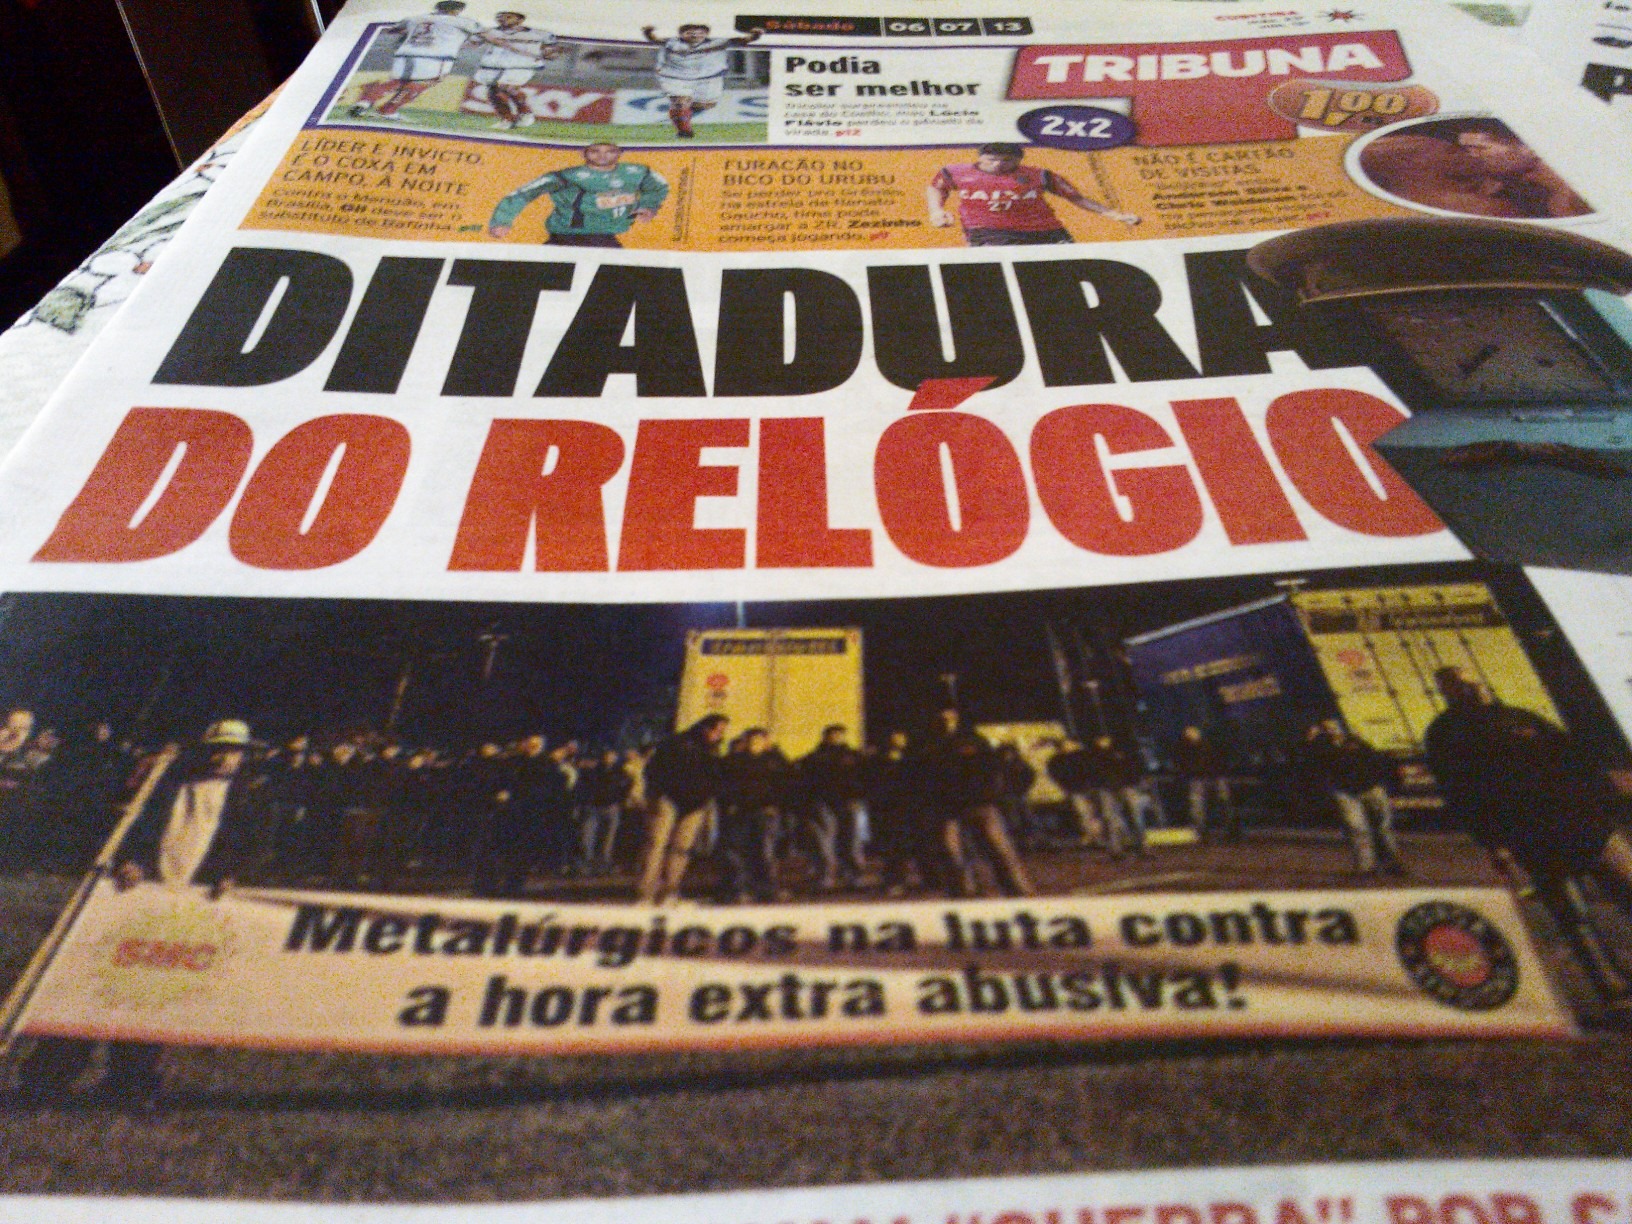 Acesse o blog assediomoralnabosch.com.br  e confira  a matéria do jornal Tribuna do Paraná  sobre a luta dos trabalhadores contra a hora extra abusiva